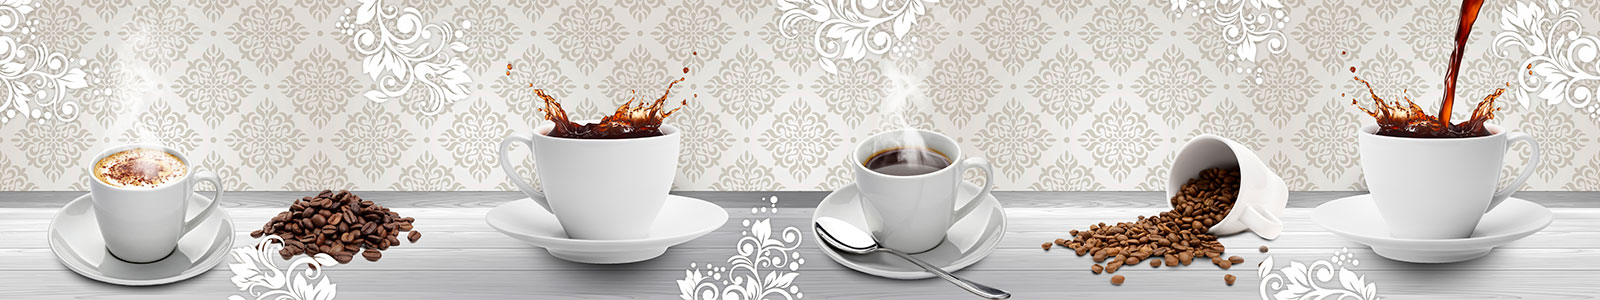 №5602 - Белые чашки кофе на фоне с узорами